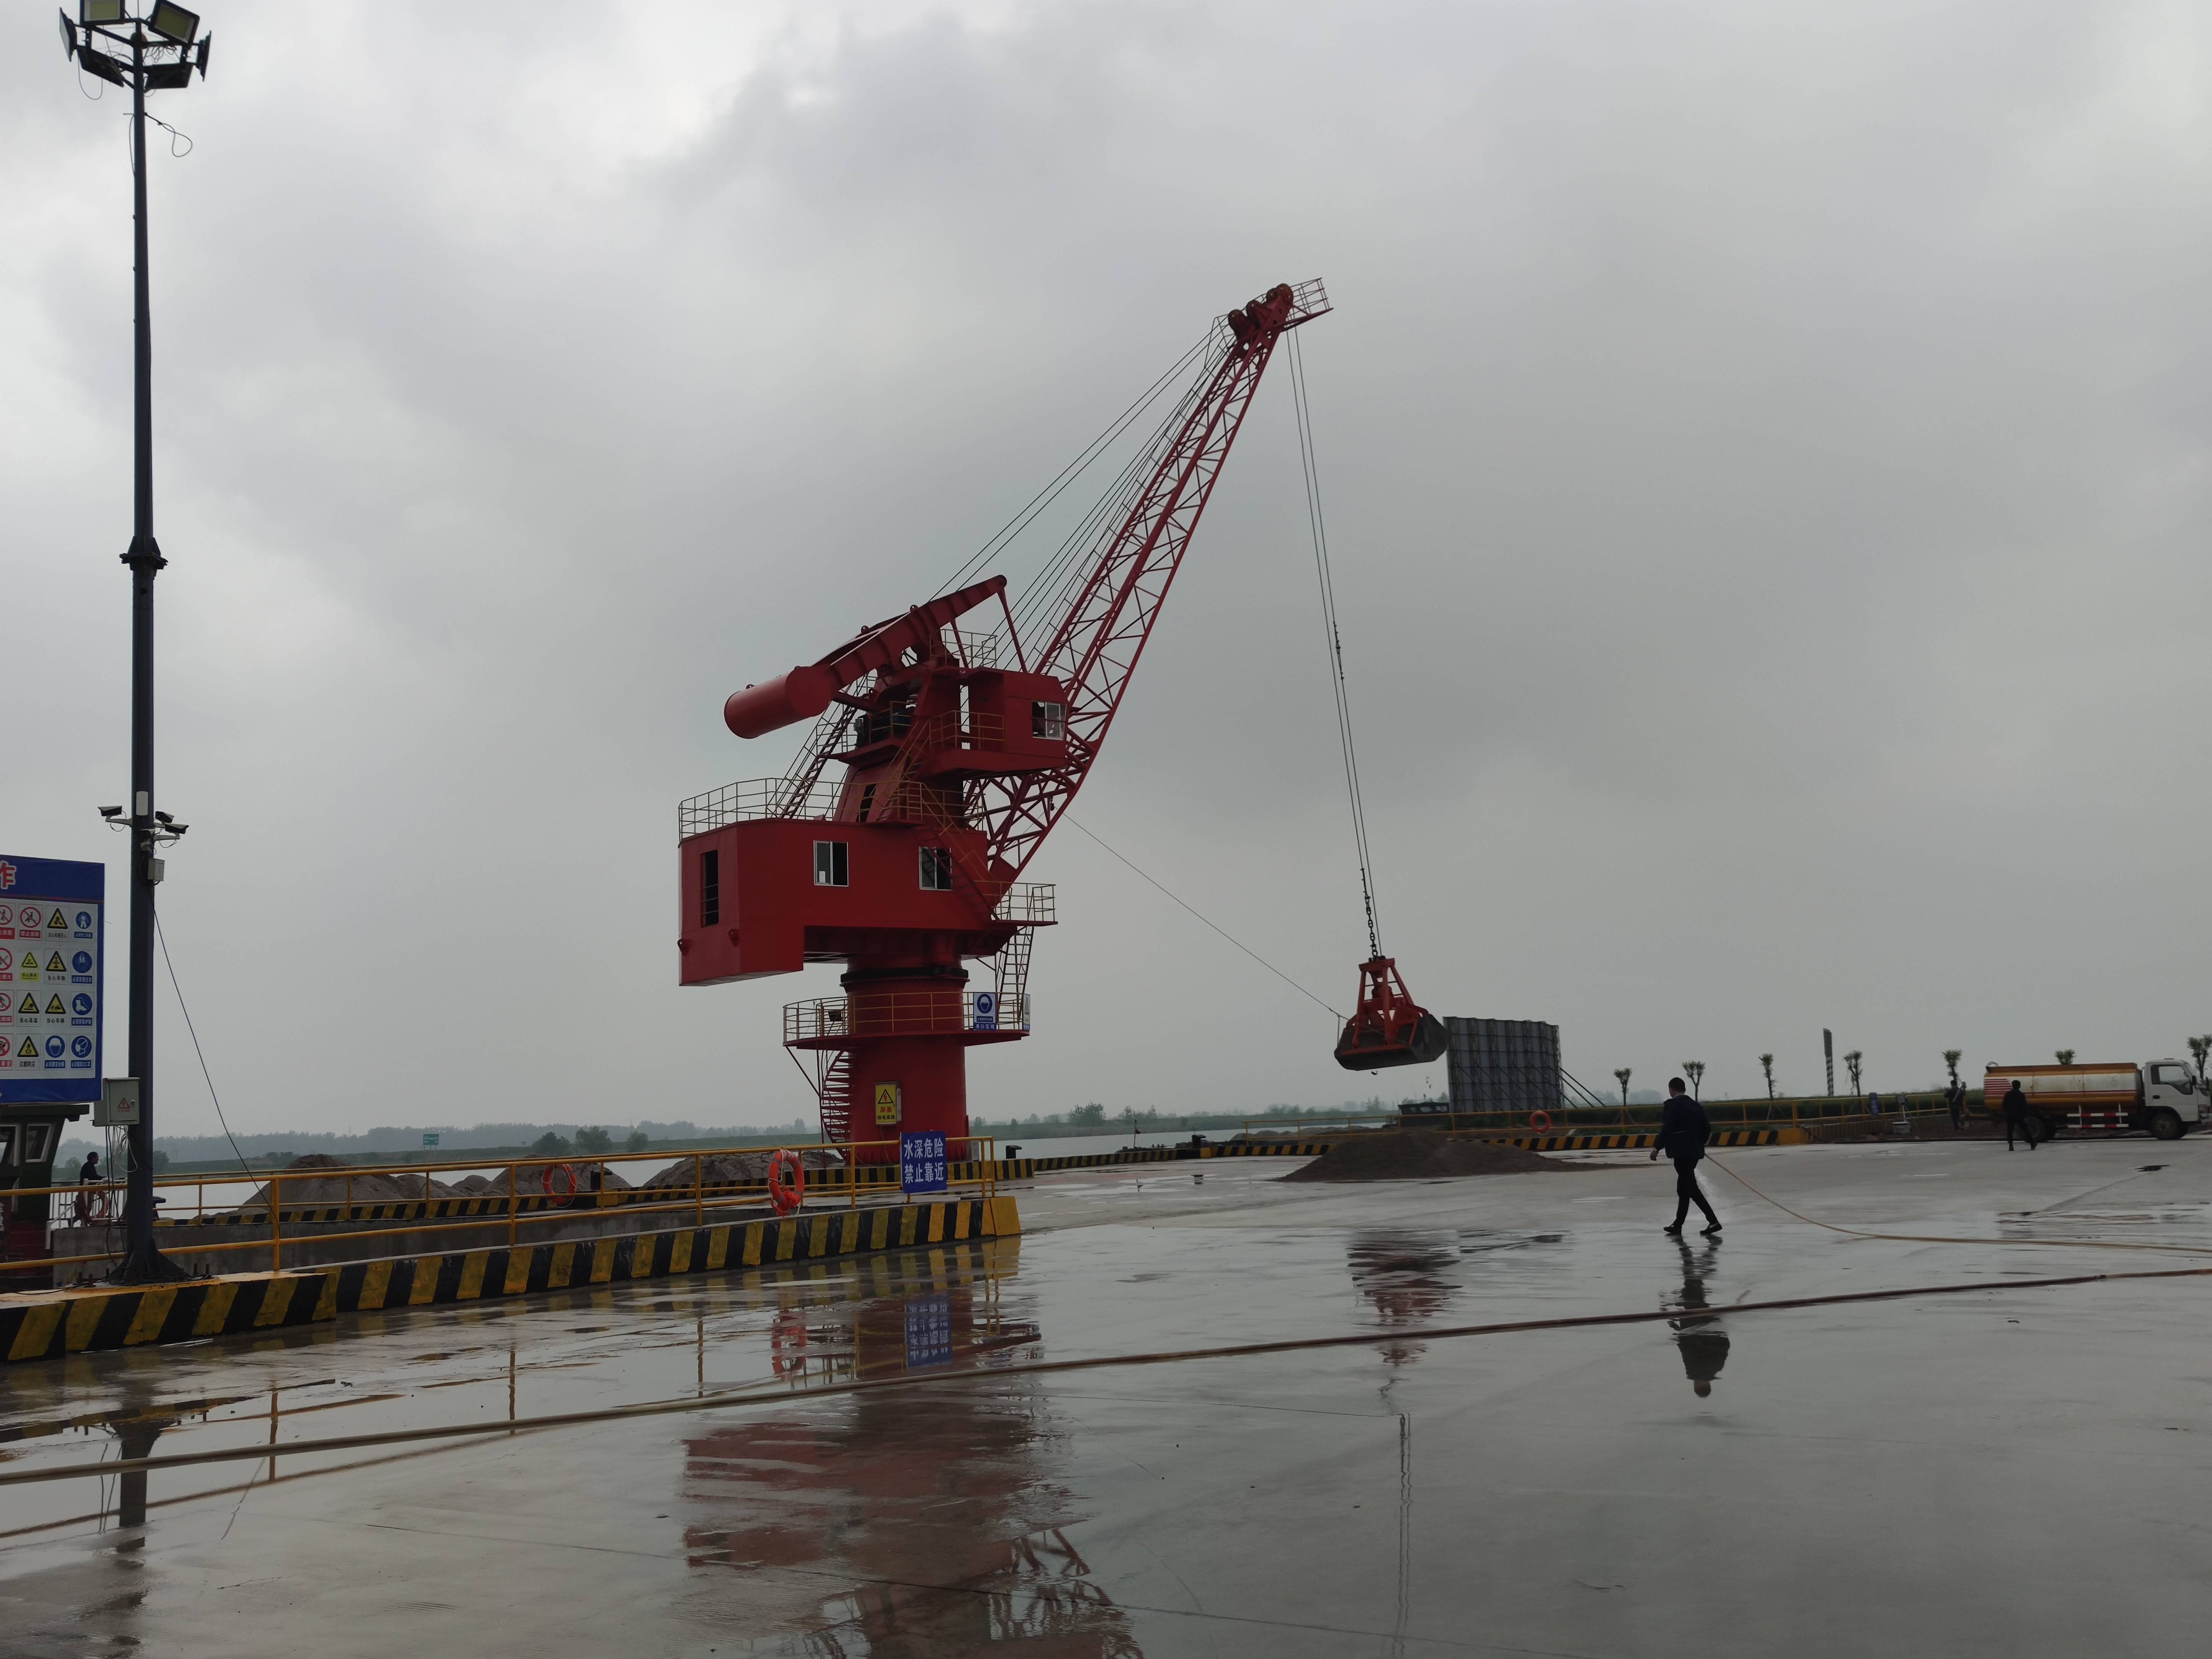 明光市潤輝港務物流有限公司滁州港明光港區潤輝碼頭工程項目竣工環境保護驗收調查